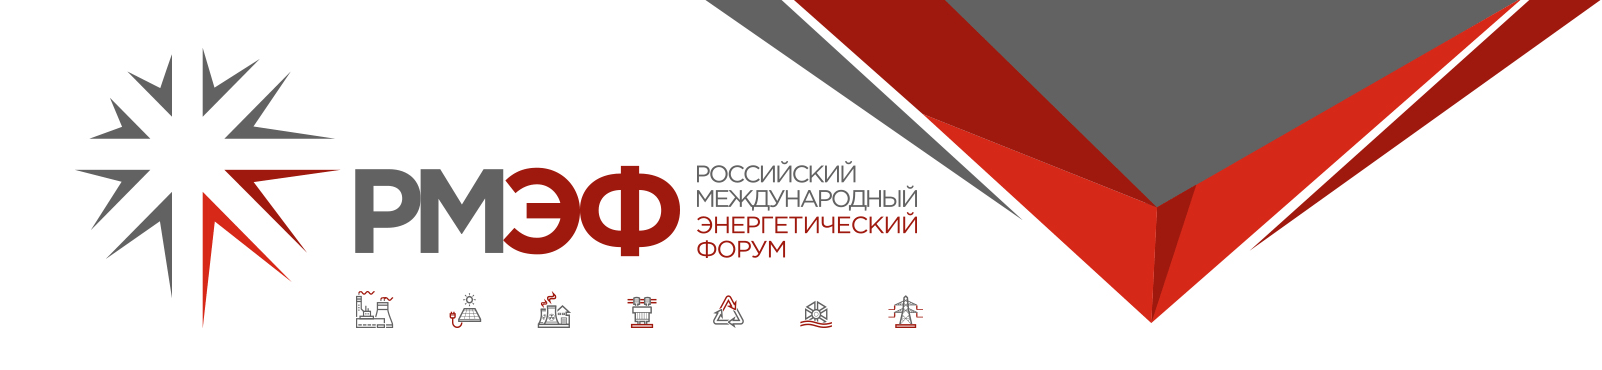 21–23 апреля 2021 года — Российский международный энергетический форум